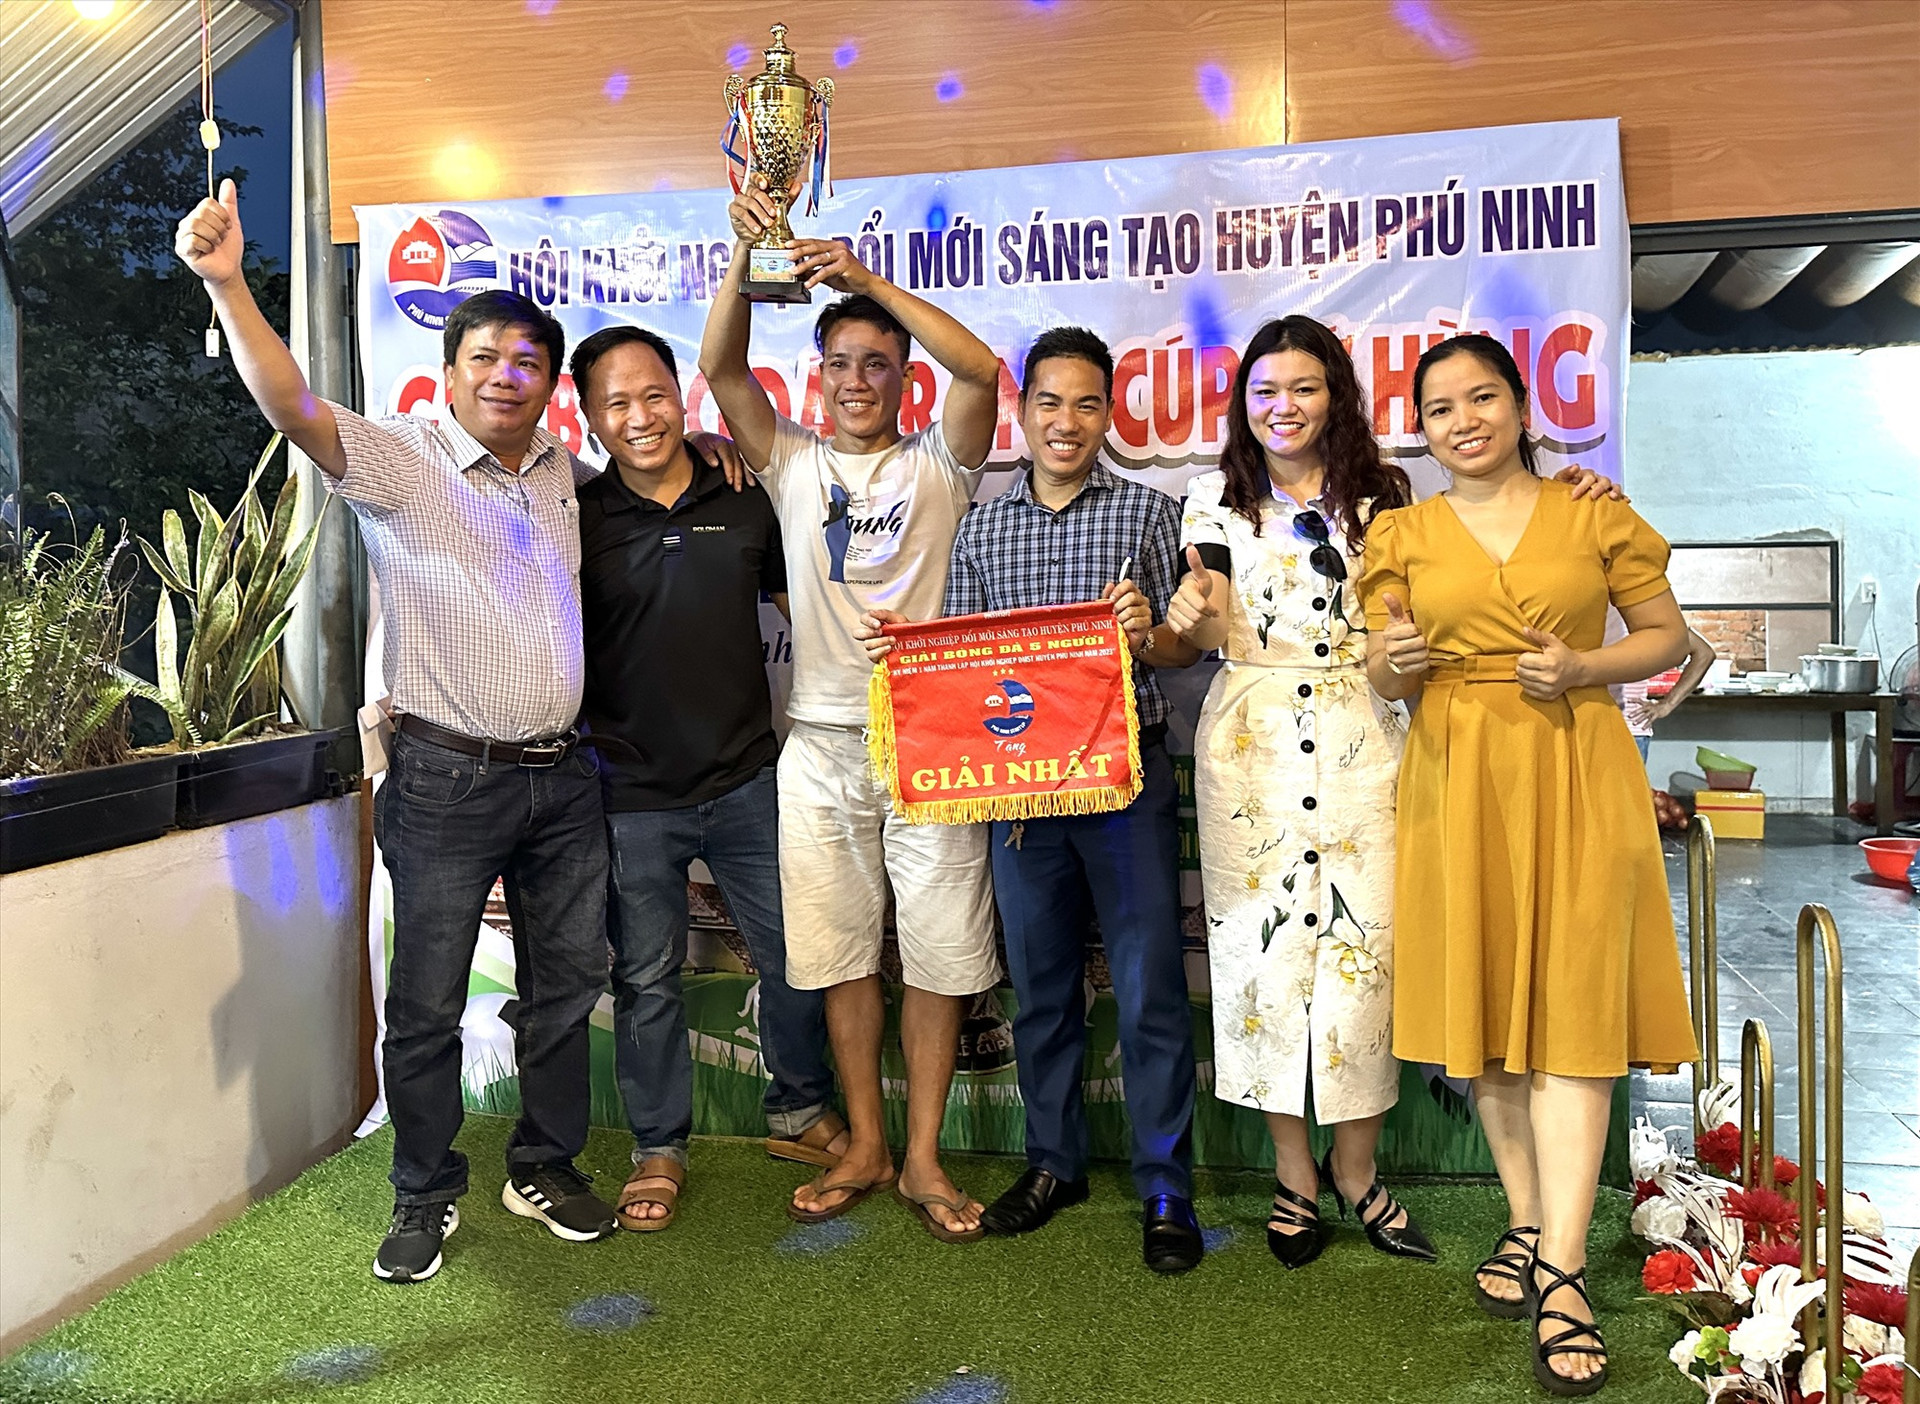 Trao cup vô địch và cờ giải Nhất cho đội bóng Hội Khởi nghiệp ĐMST huyện Phú Ninh. Ảnh: VINH HẢI